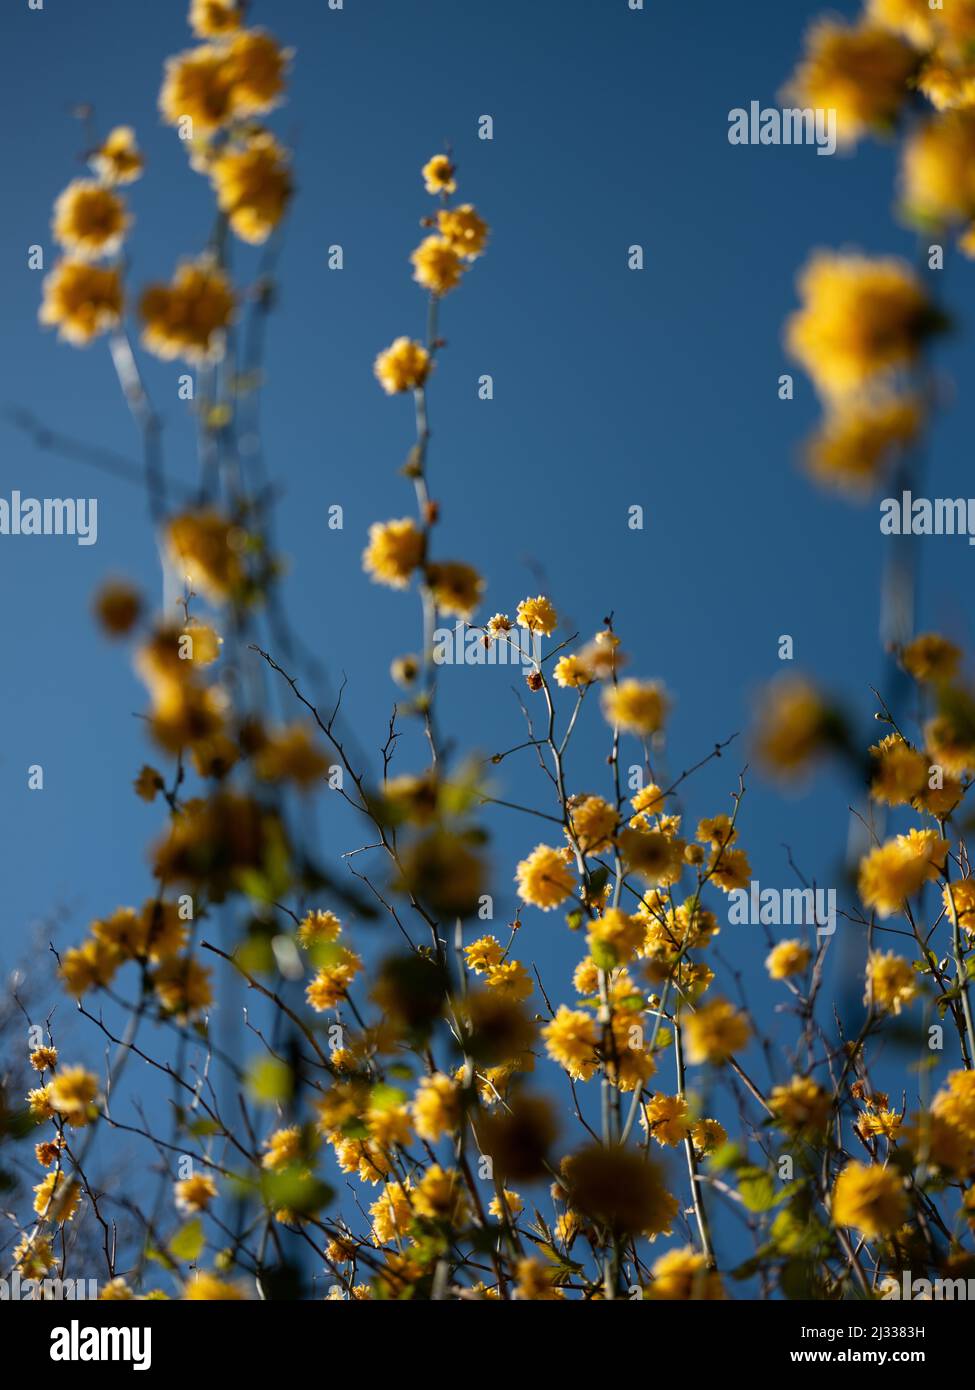 Fotografía abstracta de árboles con flores amarillas. Foto de stock